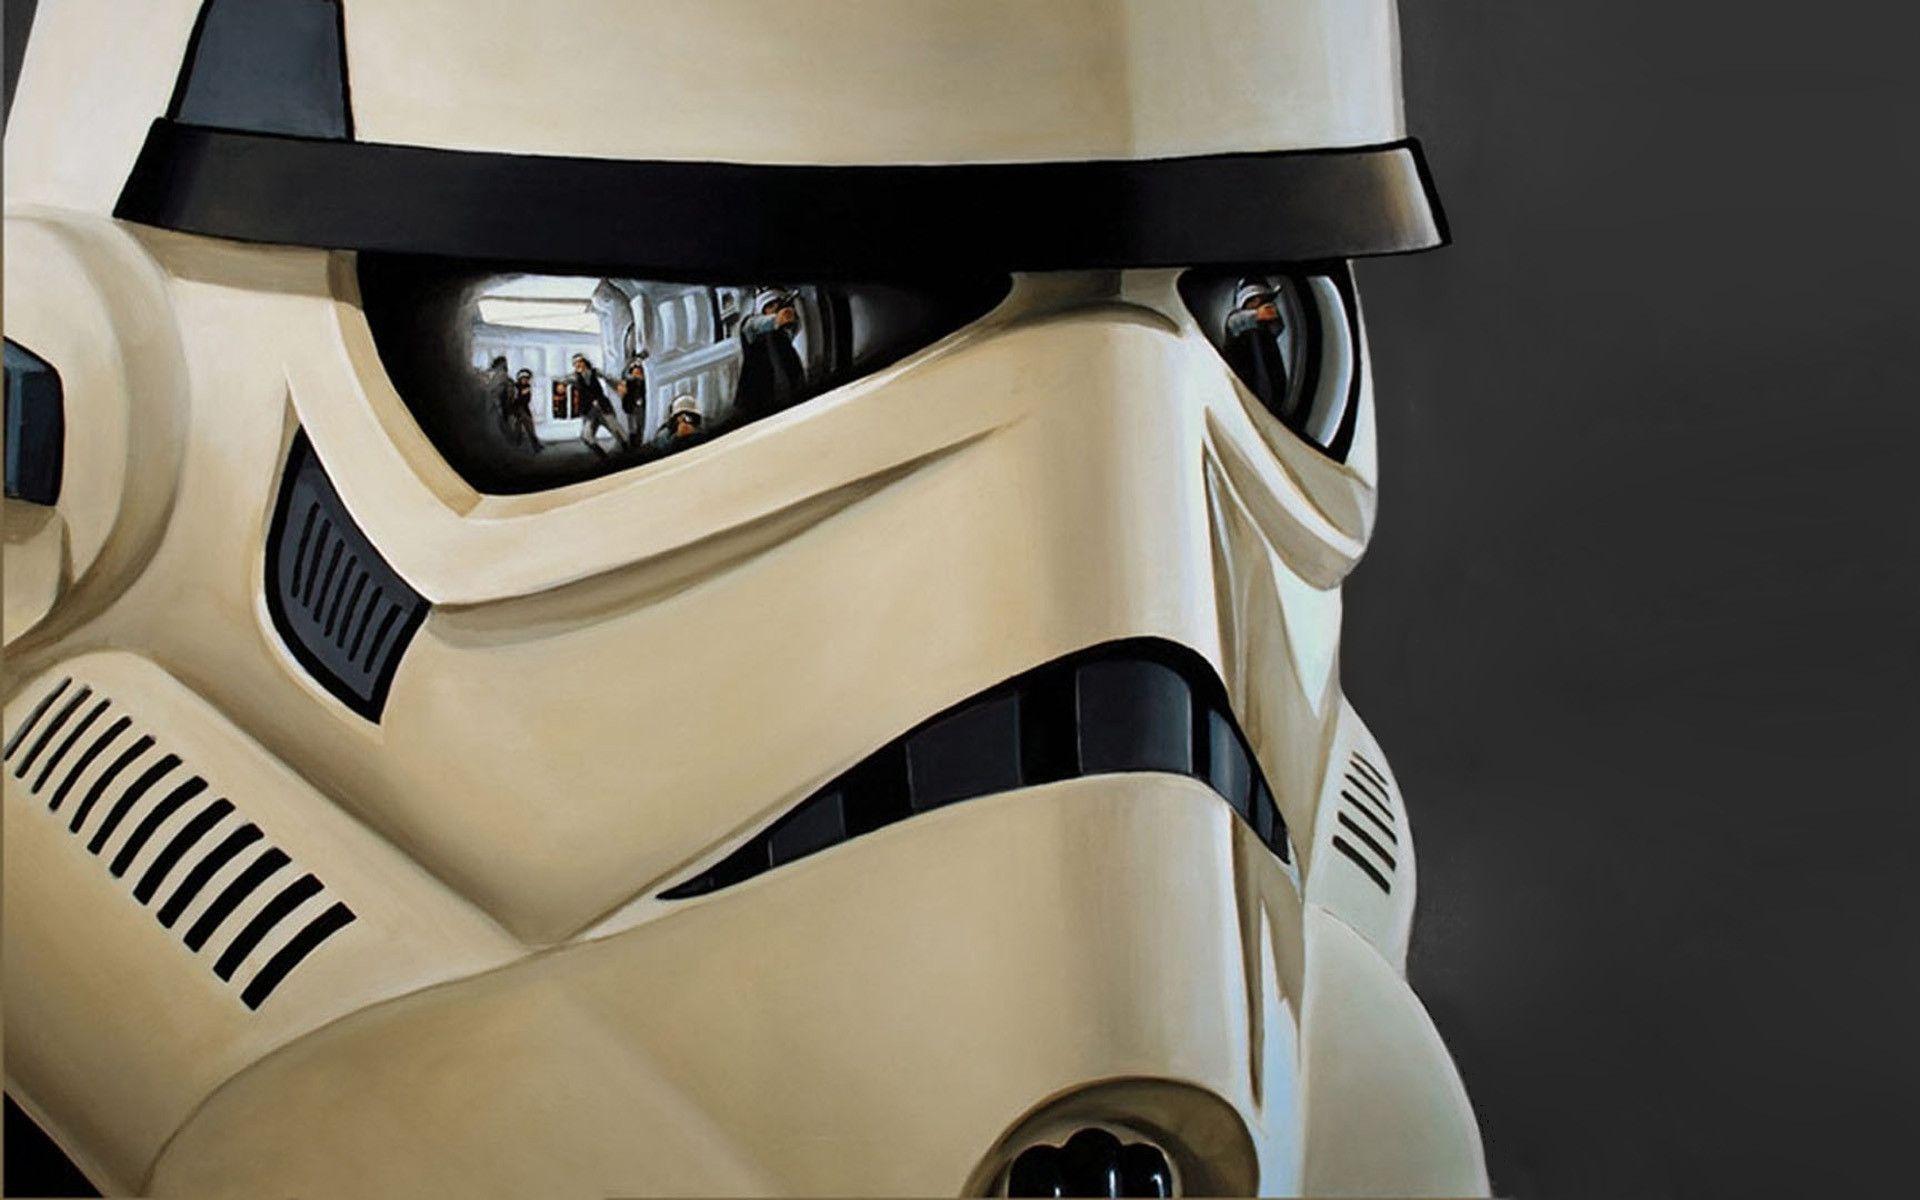 The Image of Star Wars Stormtroopers Dark Side Clone Trooper